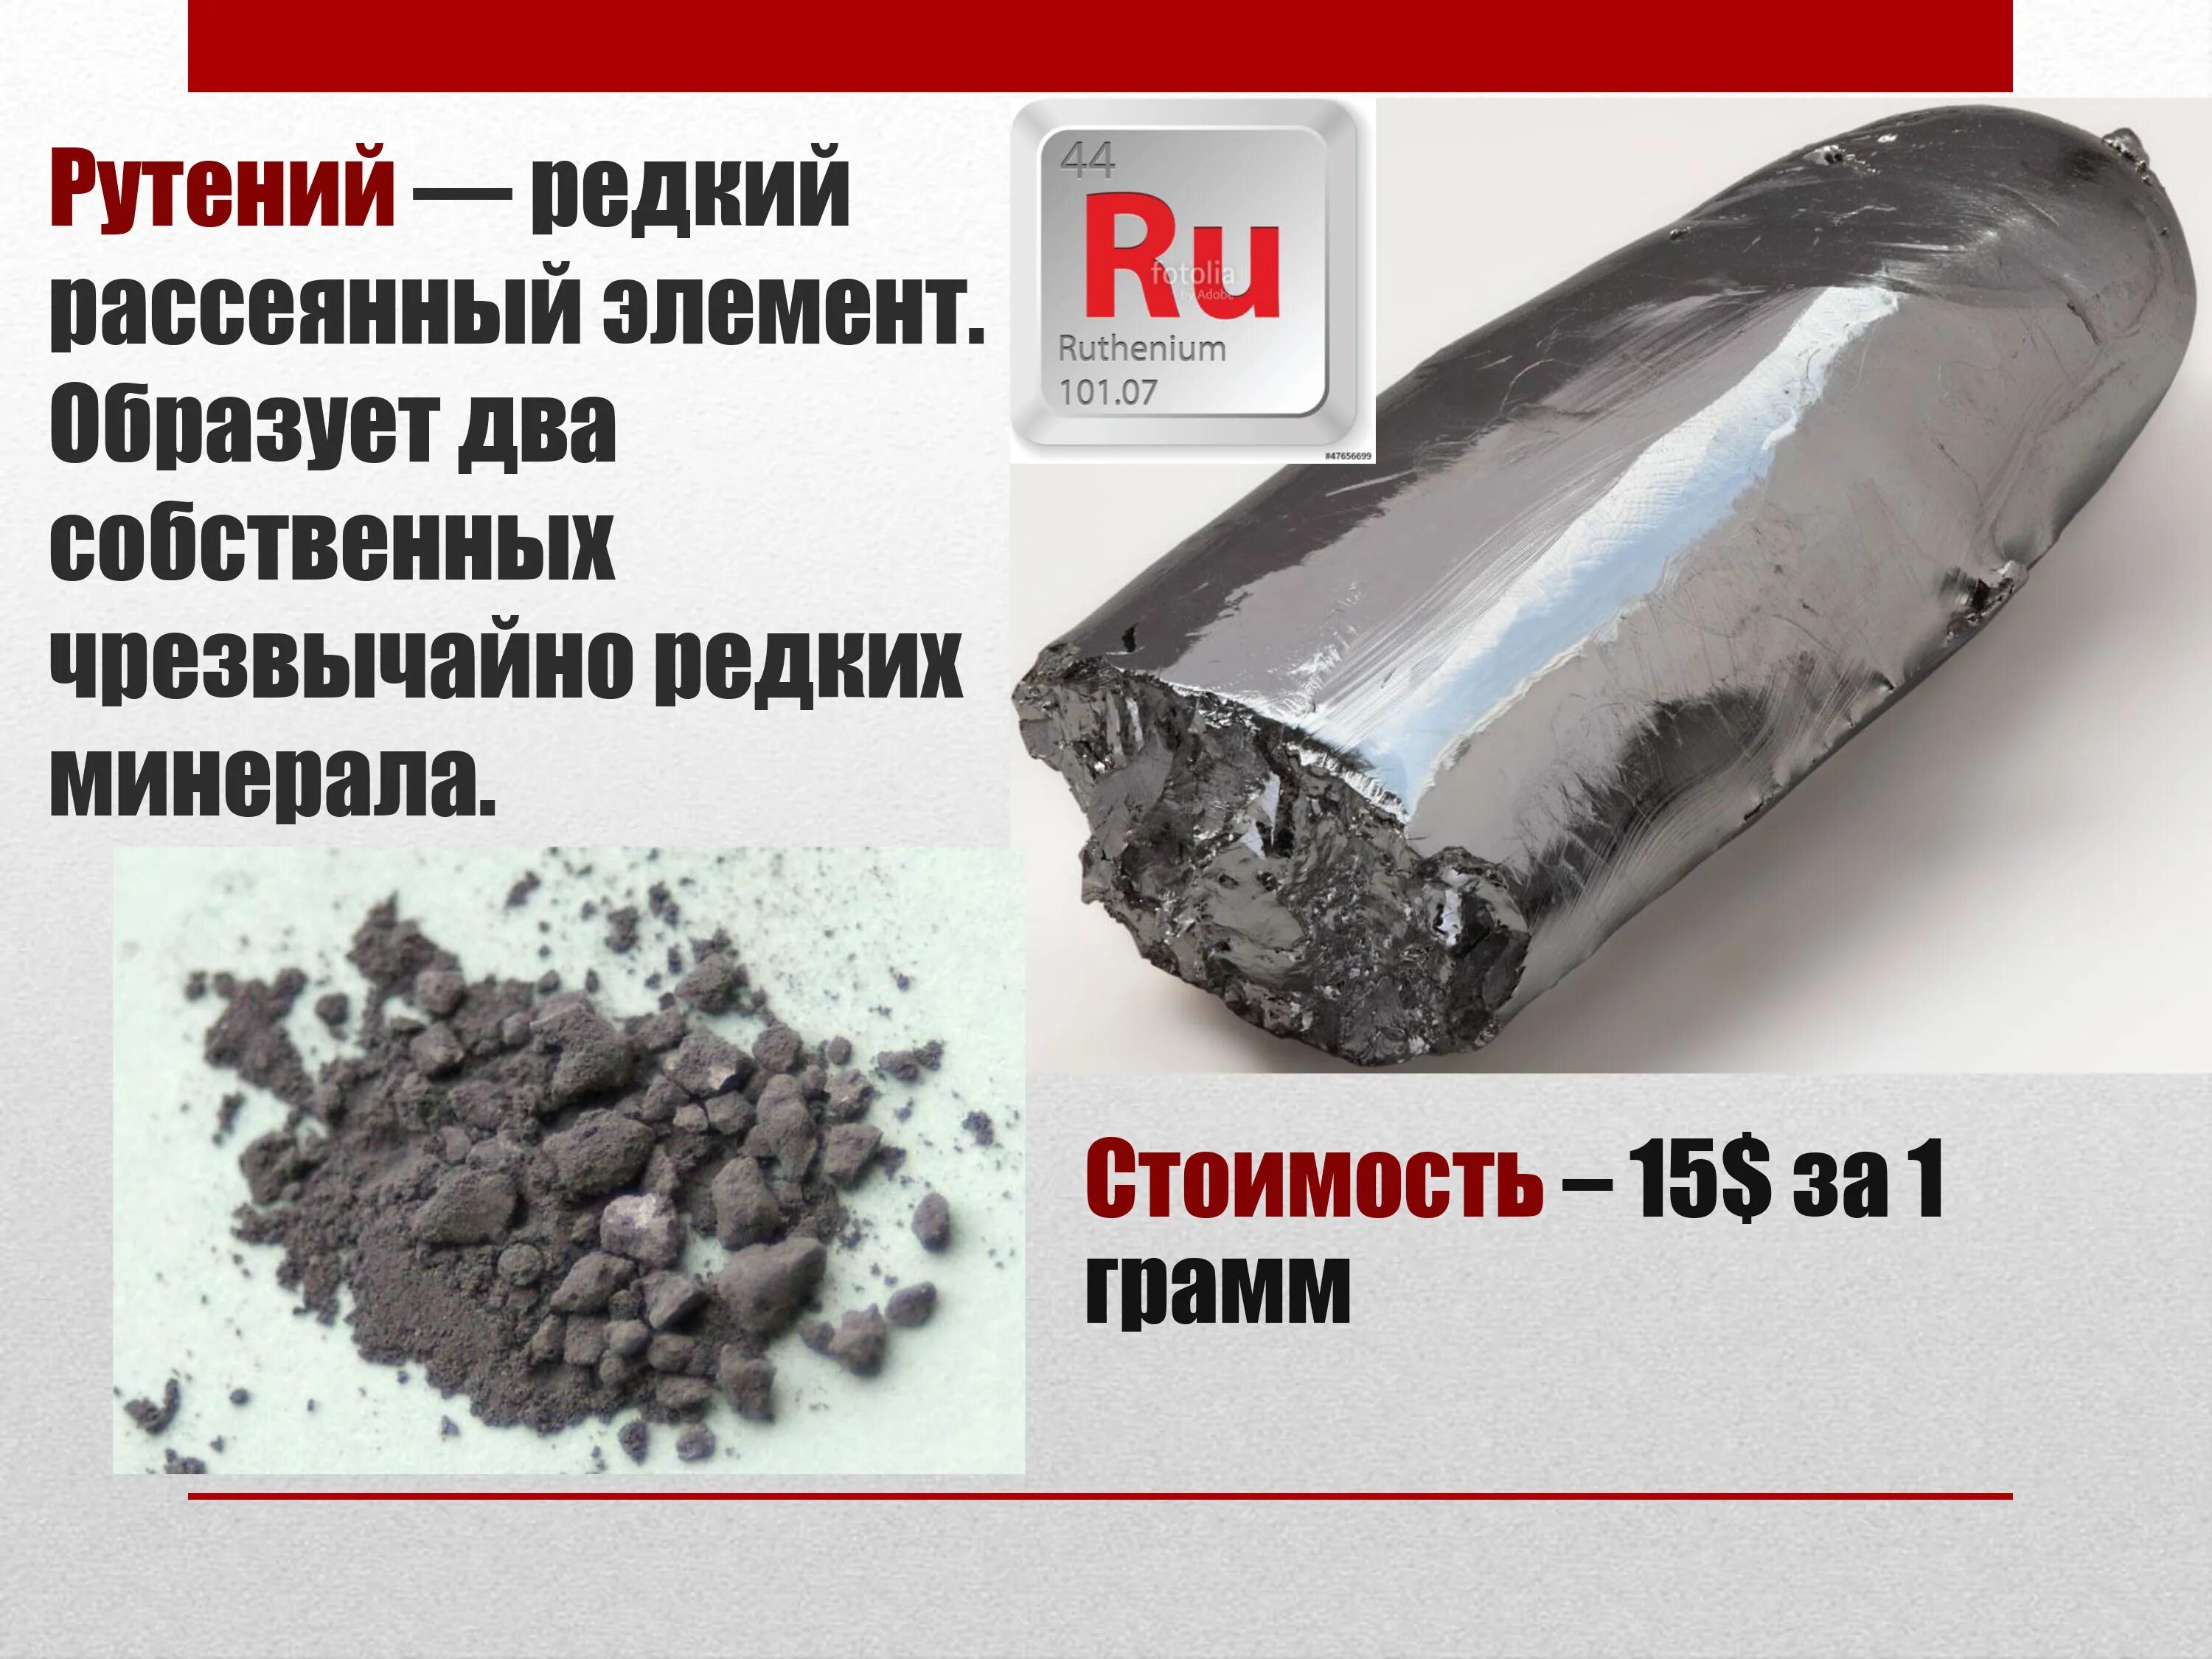 Грамм цена в рублях. Рутений химический элемент. Рутений / Ruthenium (ru). Рутений благородный металл. Рутений в промышленности.